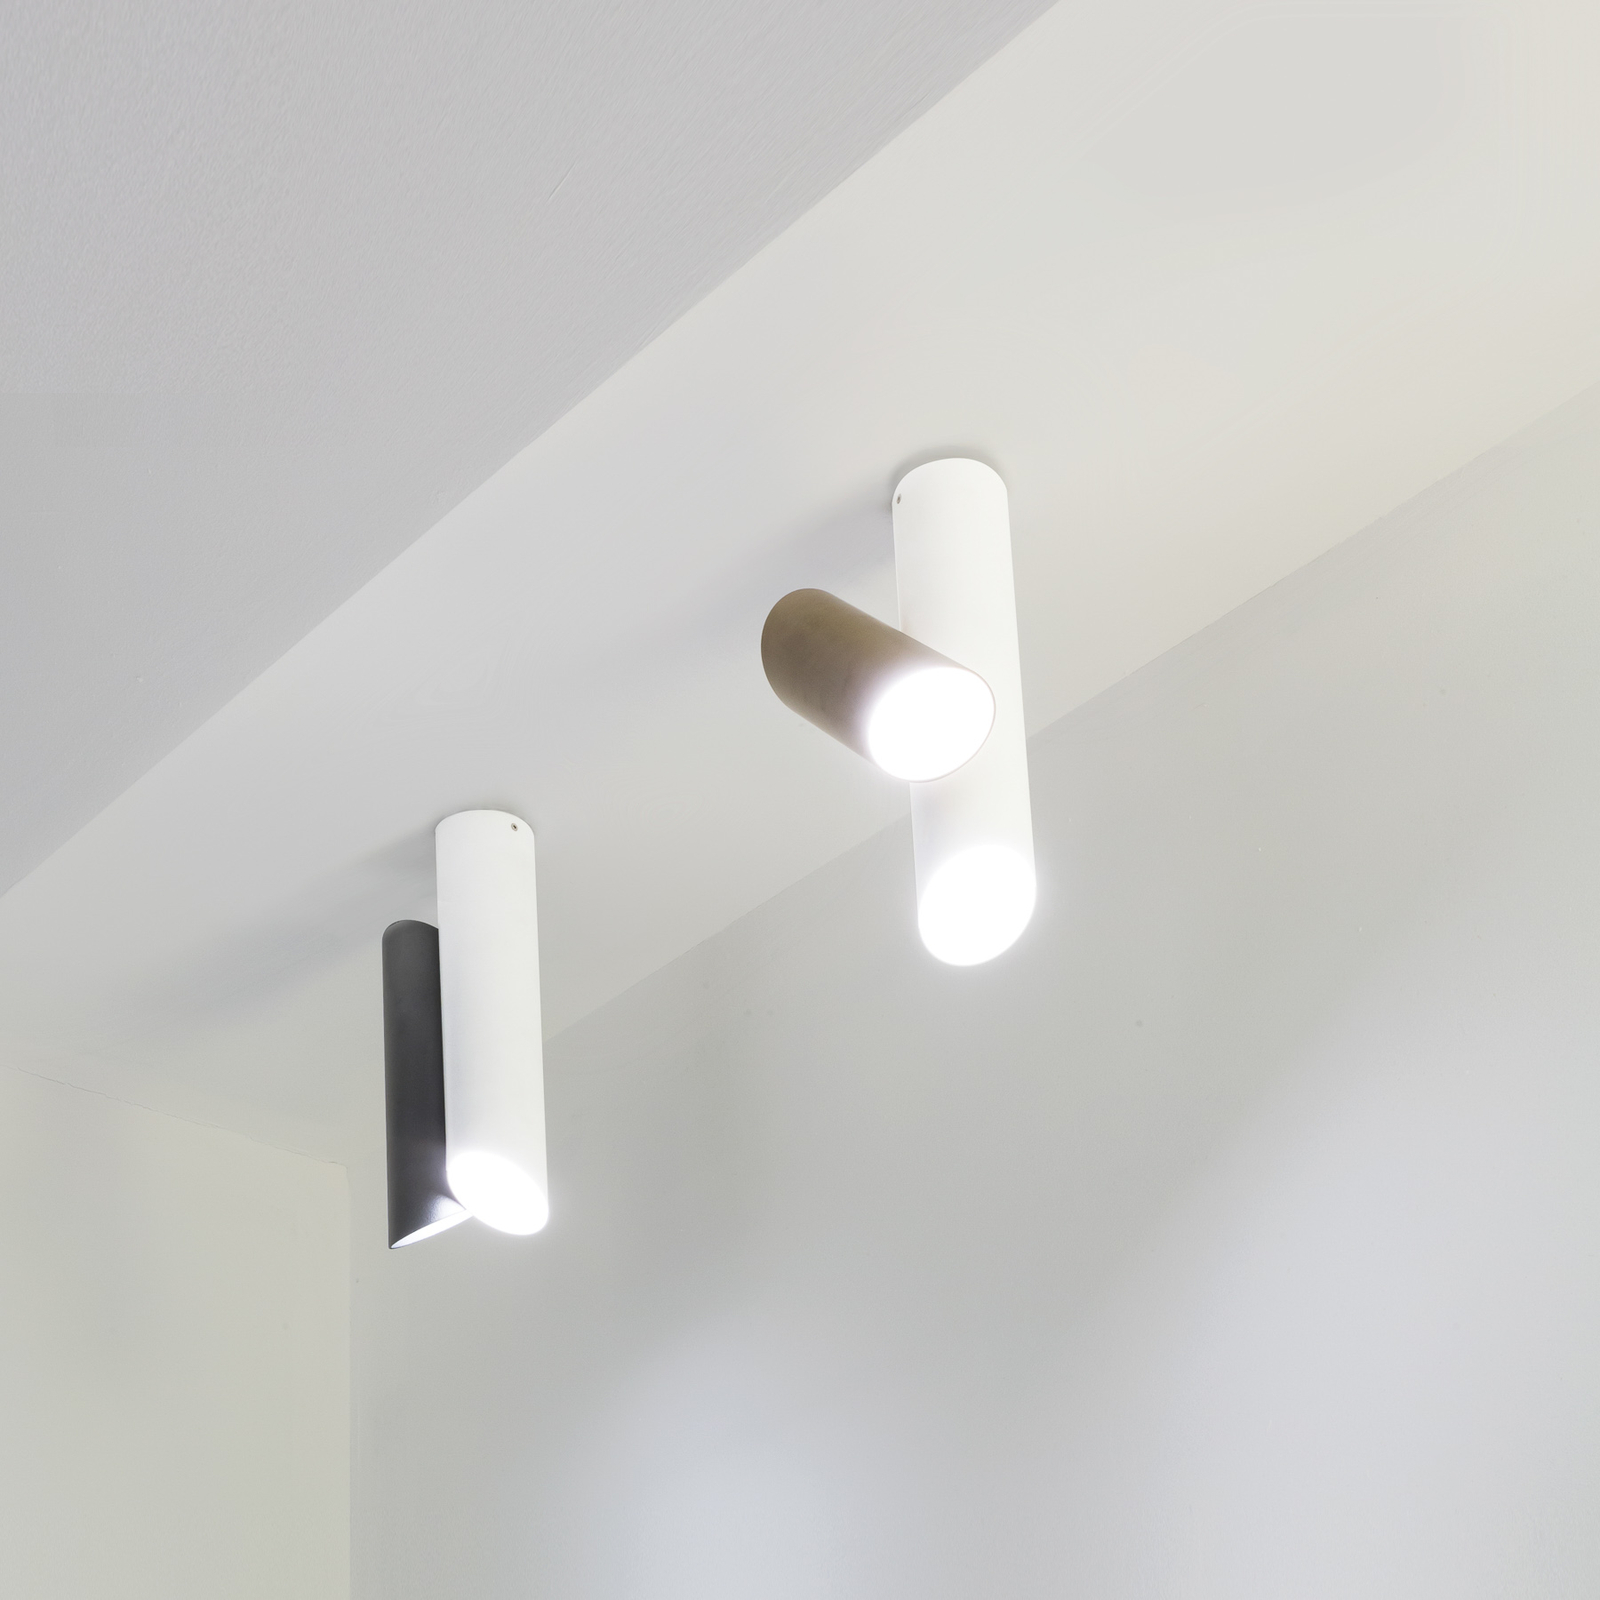 Stropní svítidlo Nemo Tubes LED dvoudílné bílé/šedé